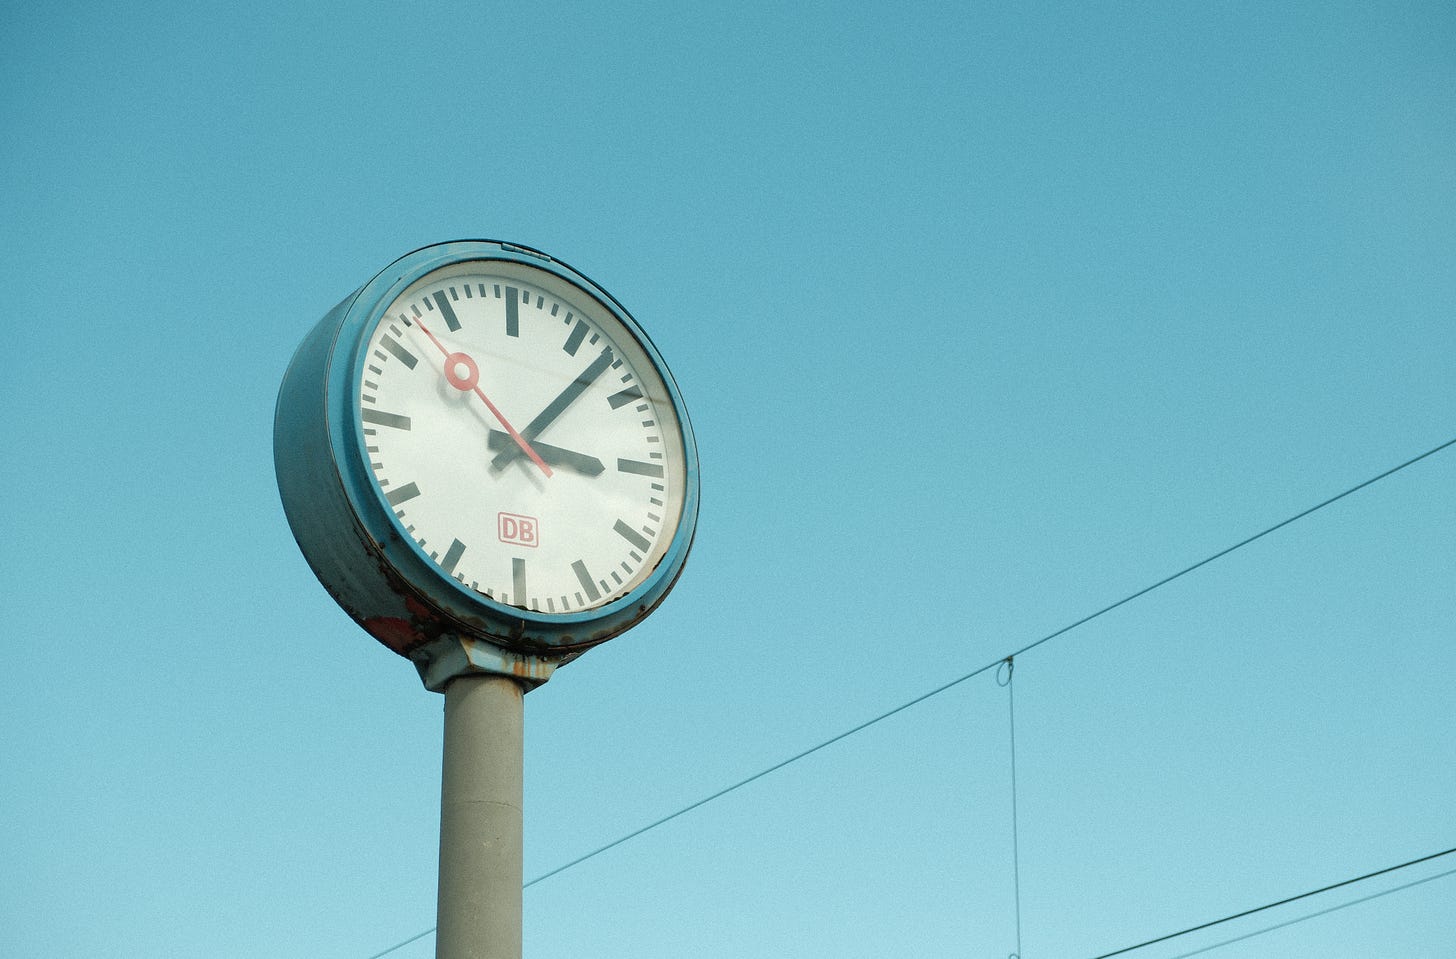 Poste relógio antigo na estação central de trem de Dusseldorf, Alemanha. O relógio é redondo e azul, ponteiros pretos e vermelho. Possui sinais de ferrugem. O céu é azul claro e há fios de transmissão na diagonal inferior direita.